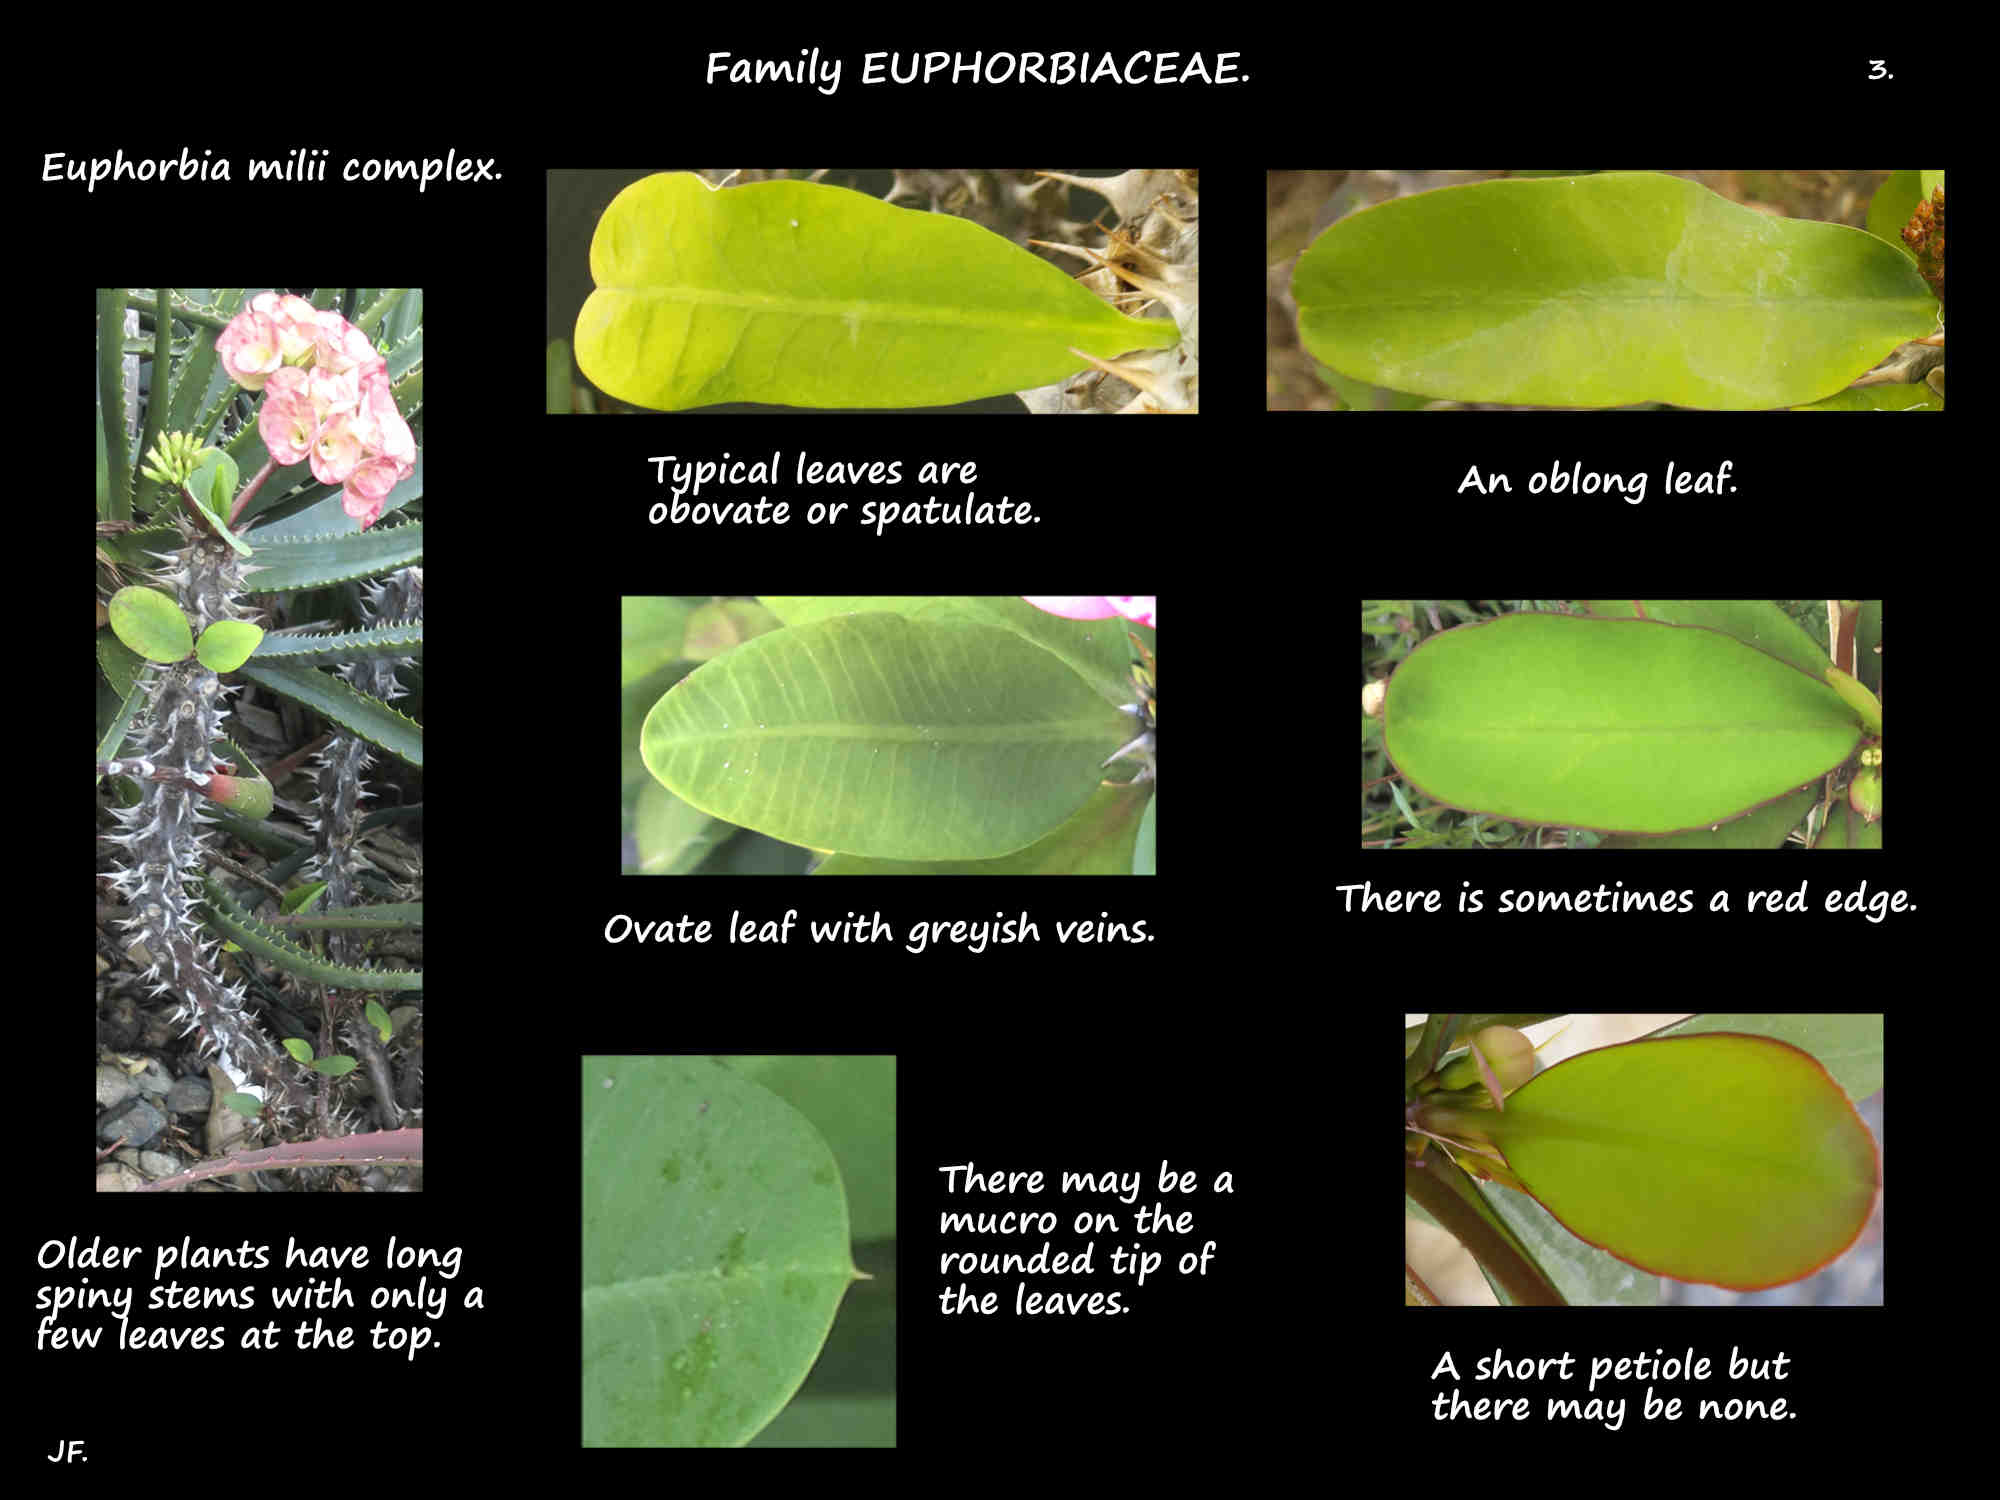 3 Leaf variations seen on Euphorbia milii plants